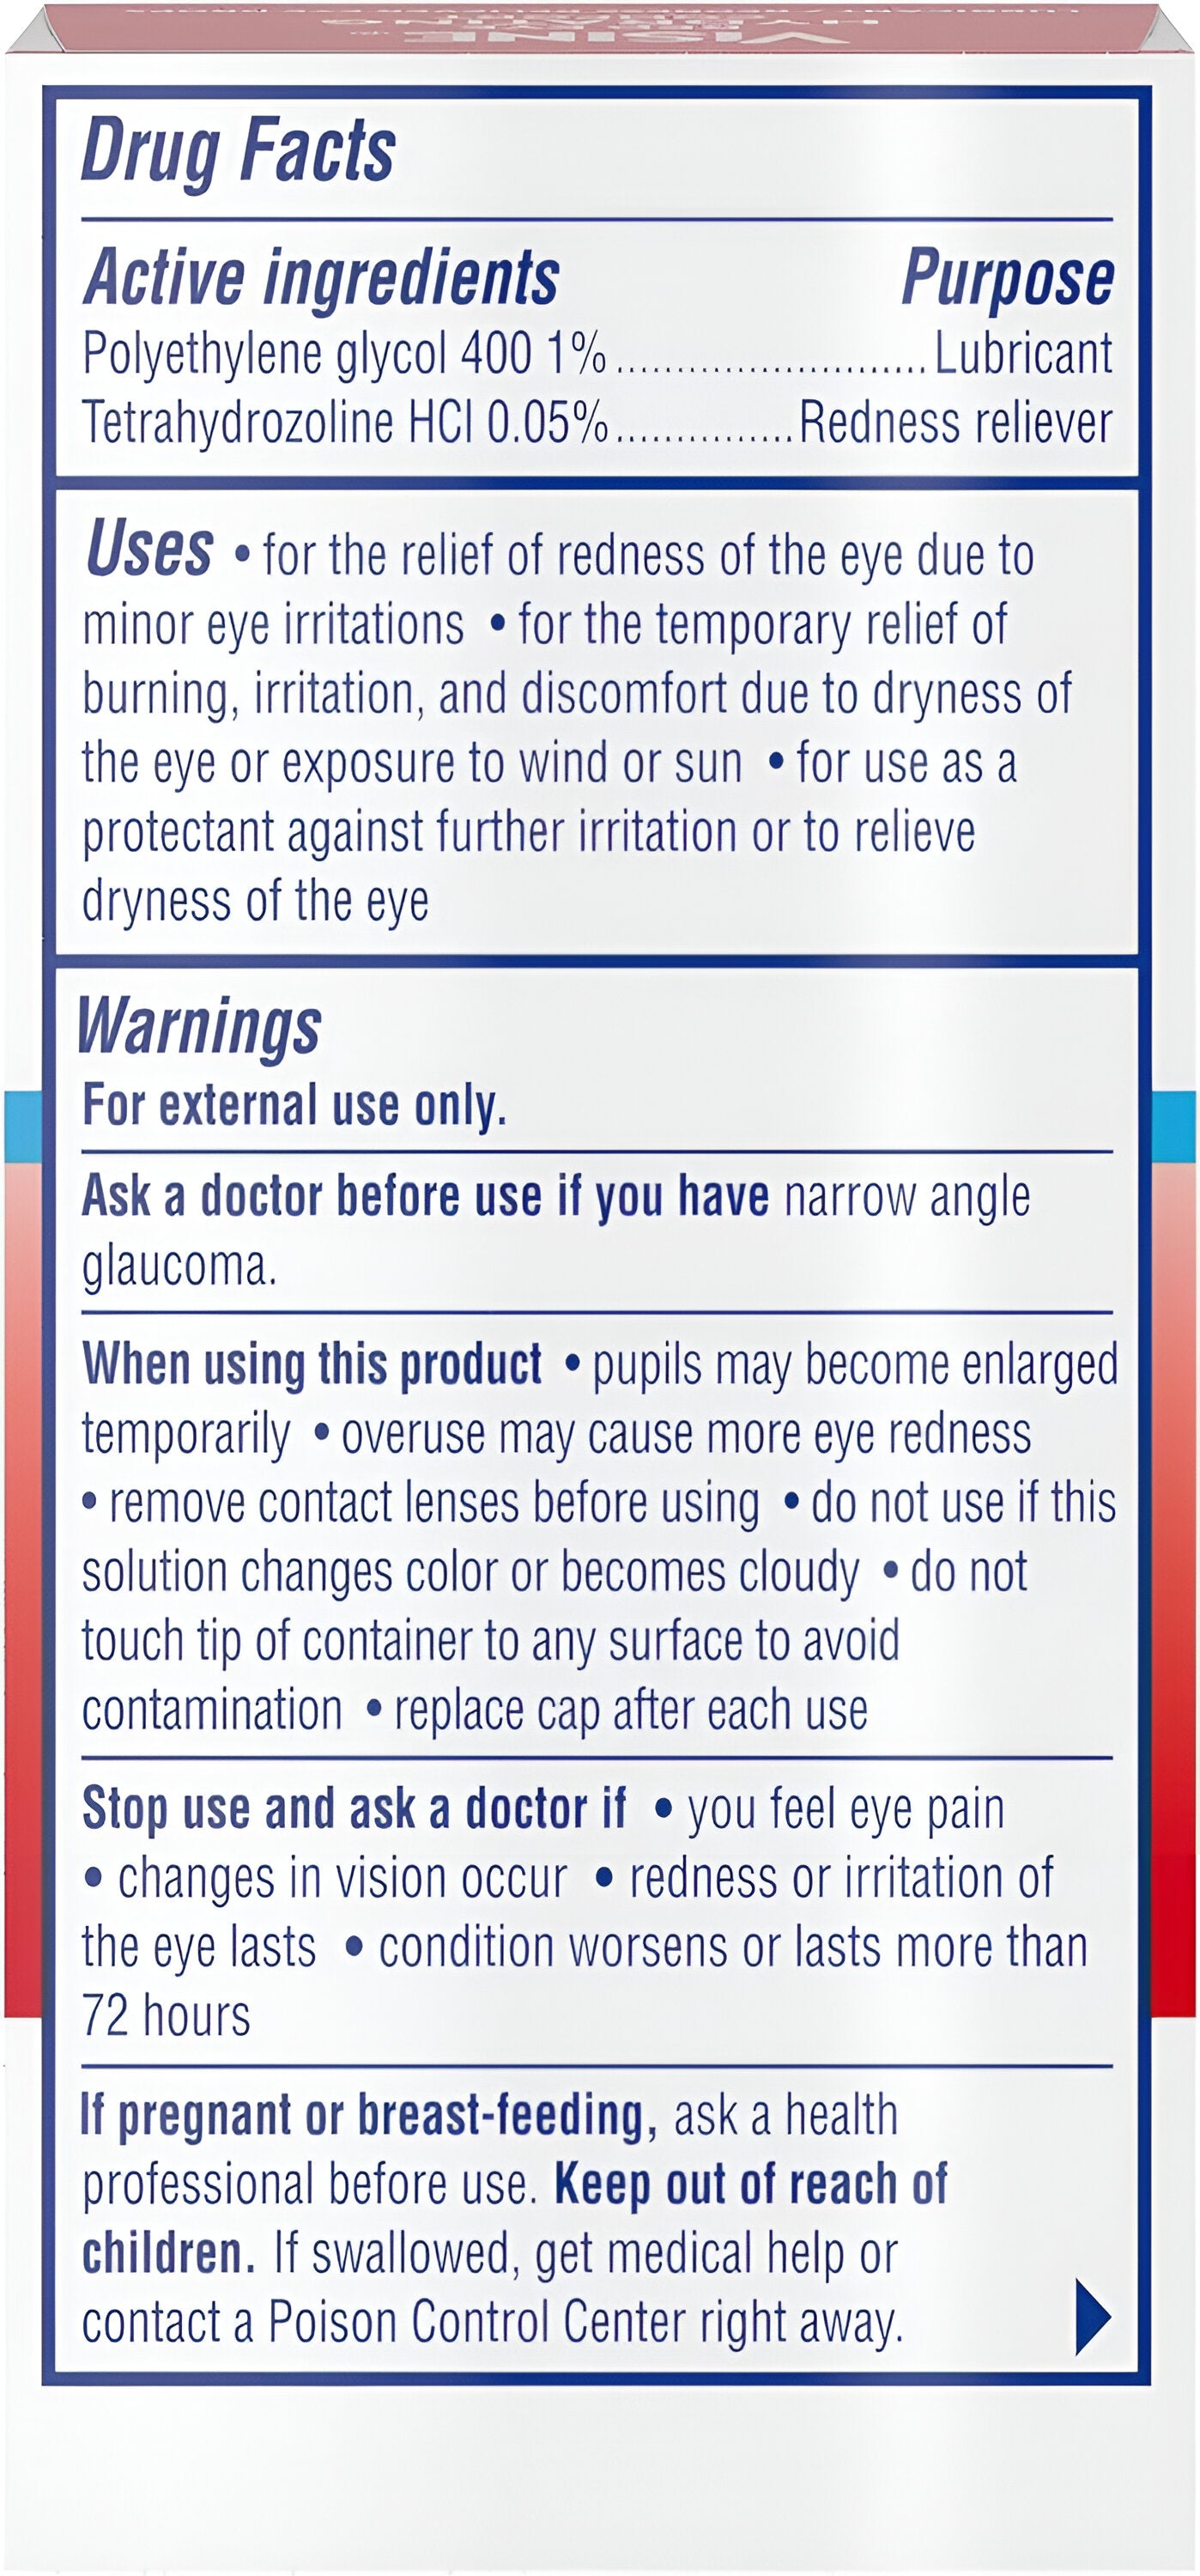 Visine Red Eye Hydrating Comfort Alivio del enrojecimiento y gotas lubricantes para ayudar a hidratar y aliviar los ojos rojos debido a irritaciones menores de los ojos Rápido, Tetrahidrozolina HCl, 0.5 fl. oz